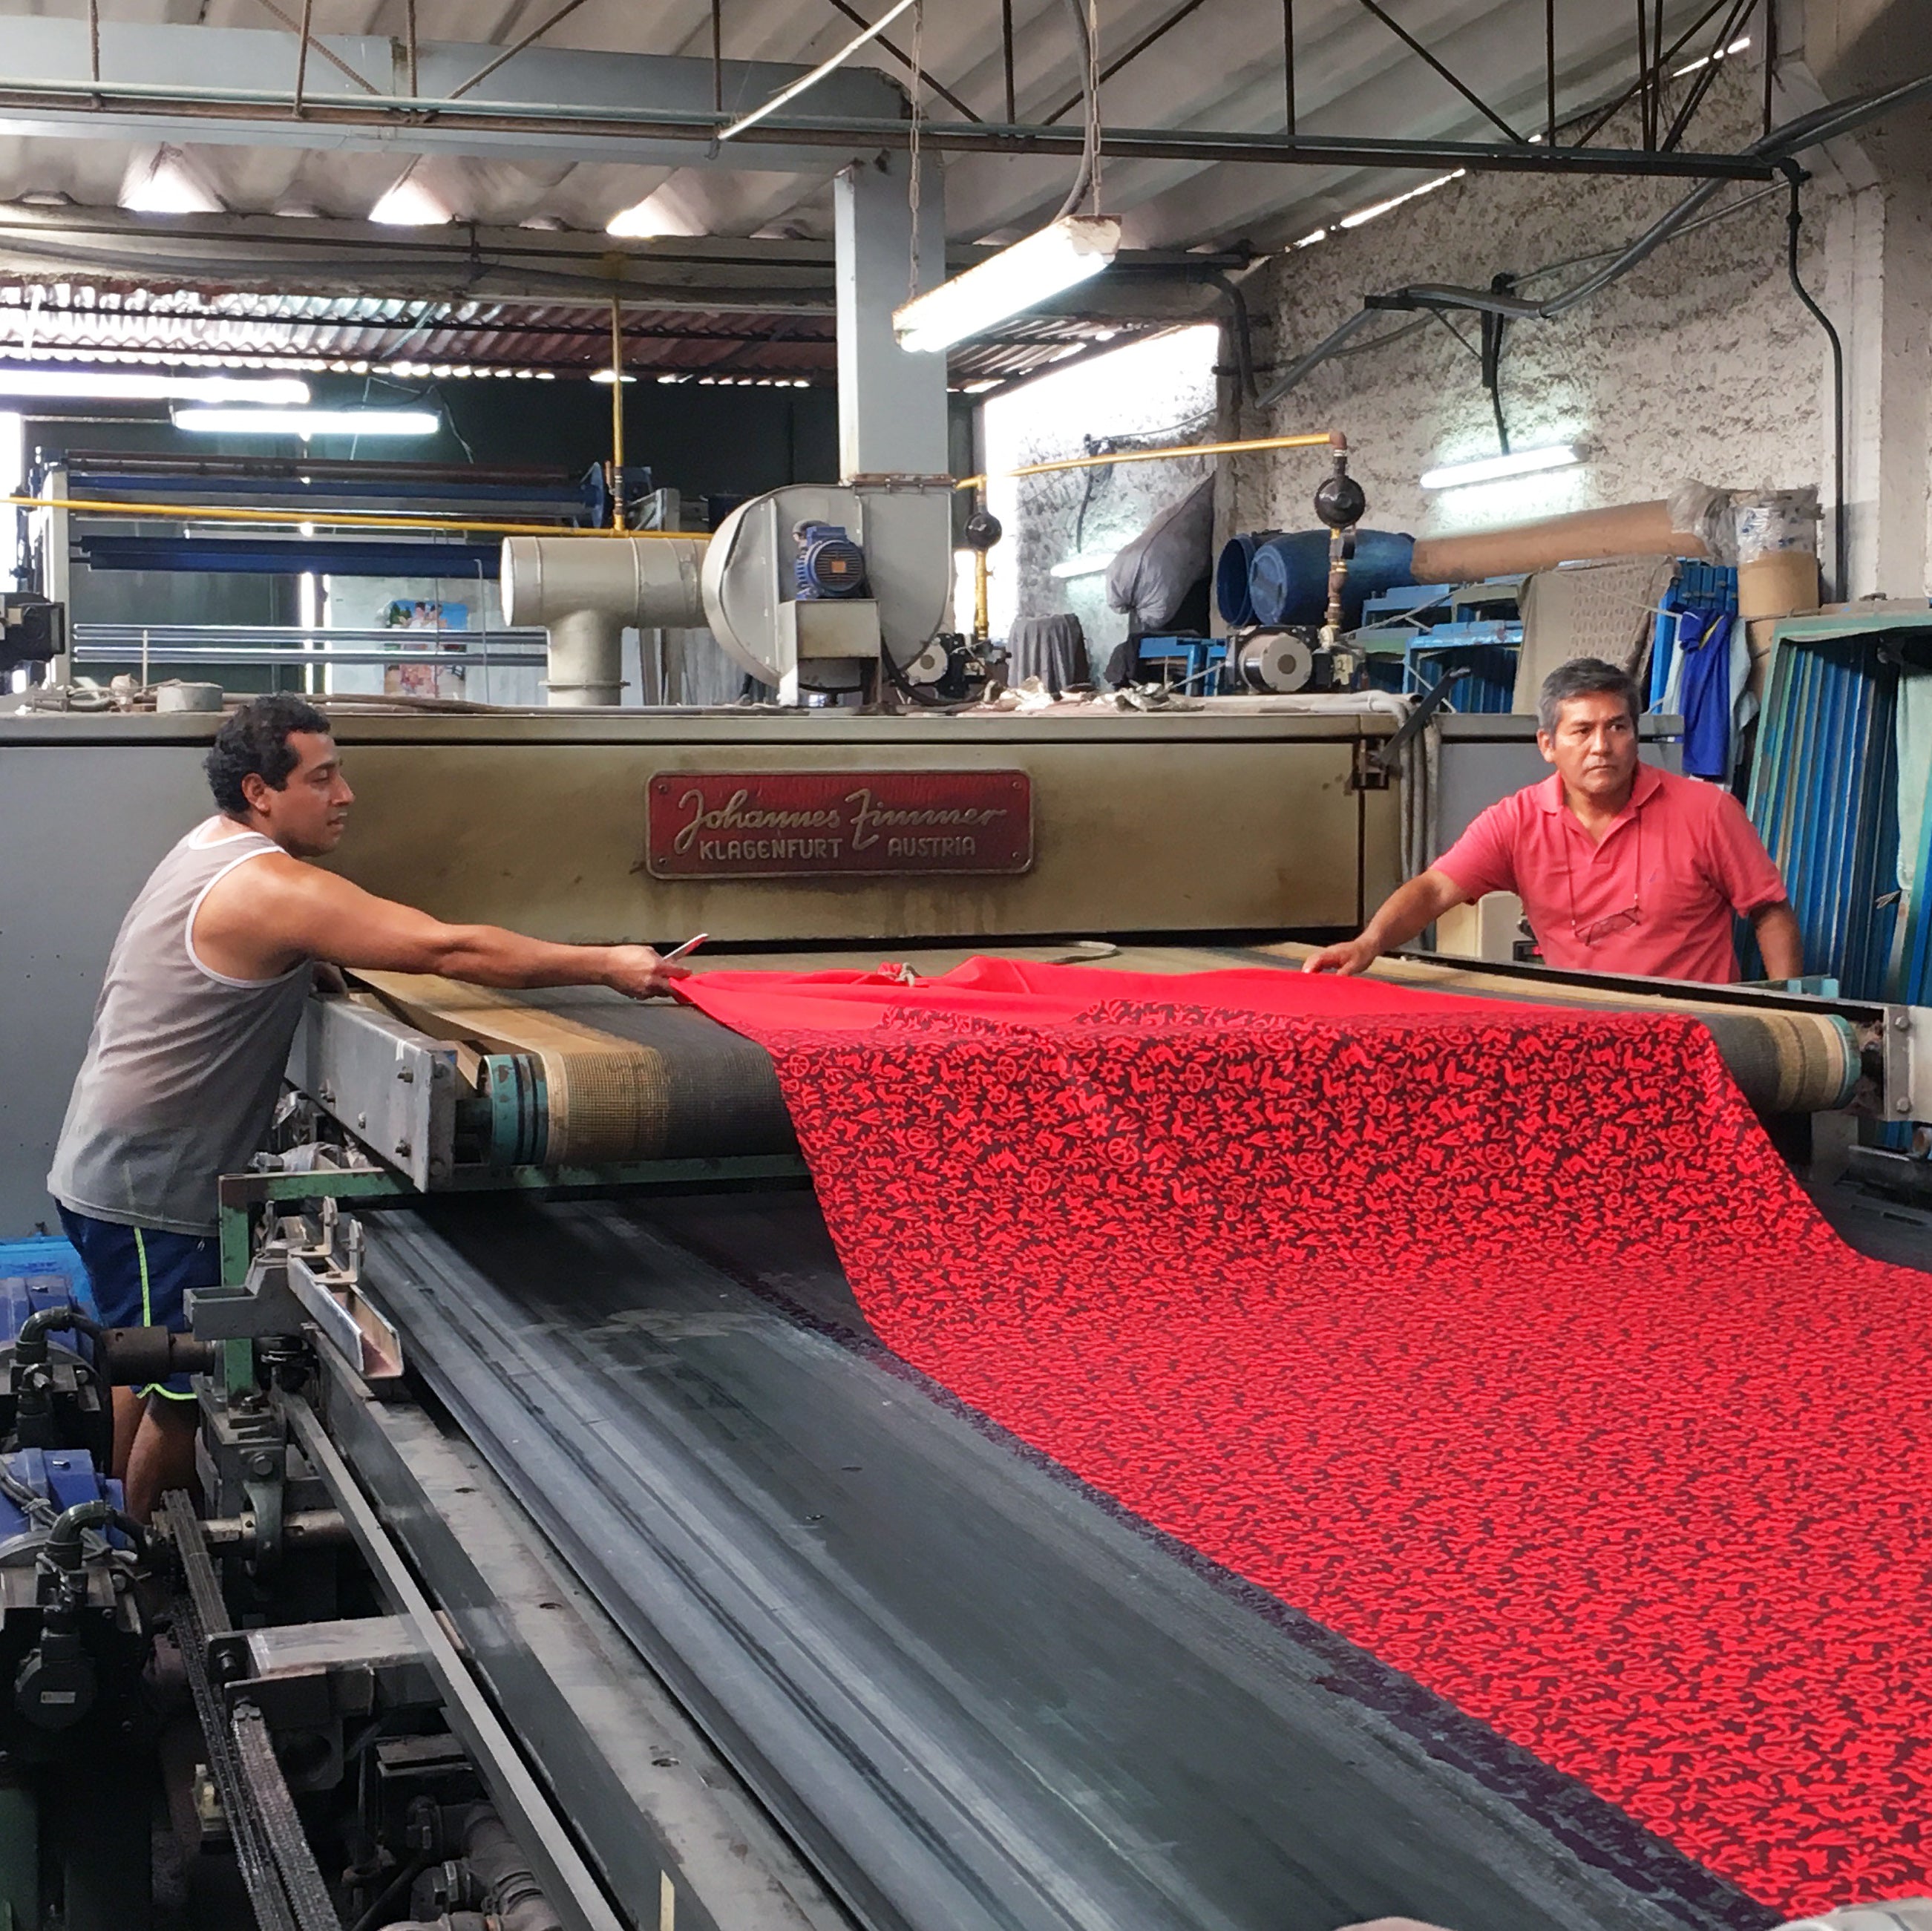 Set of Four Napkins - Pasto Print Red